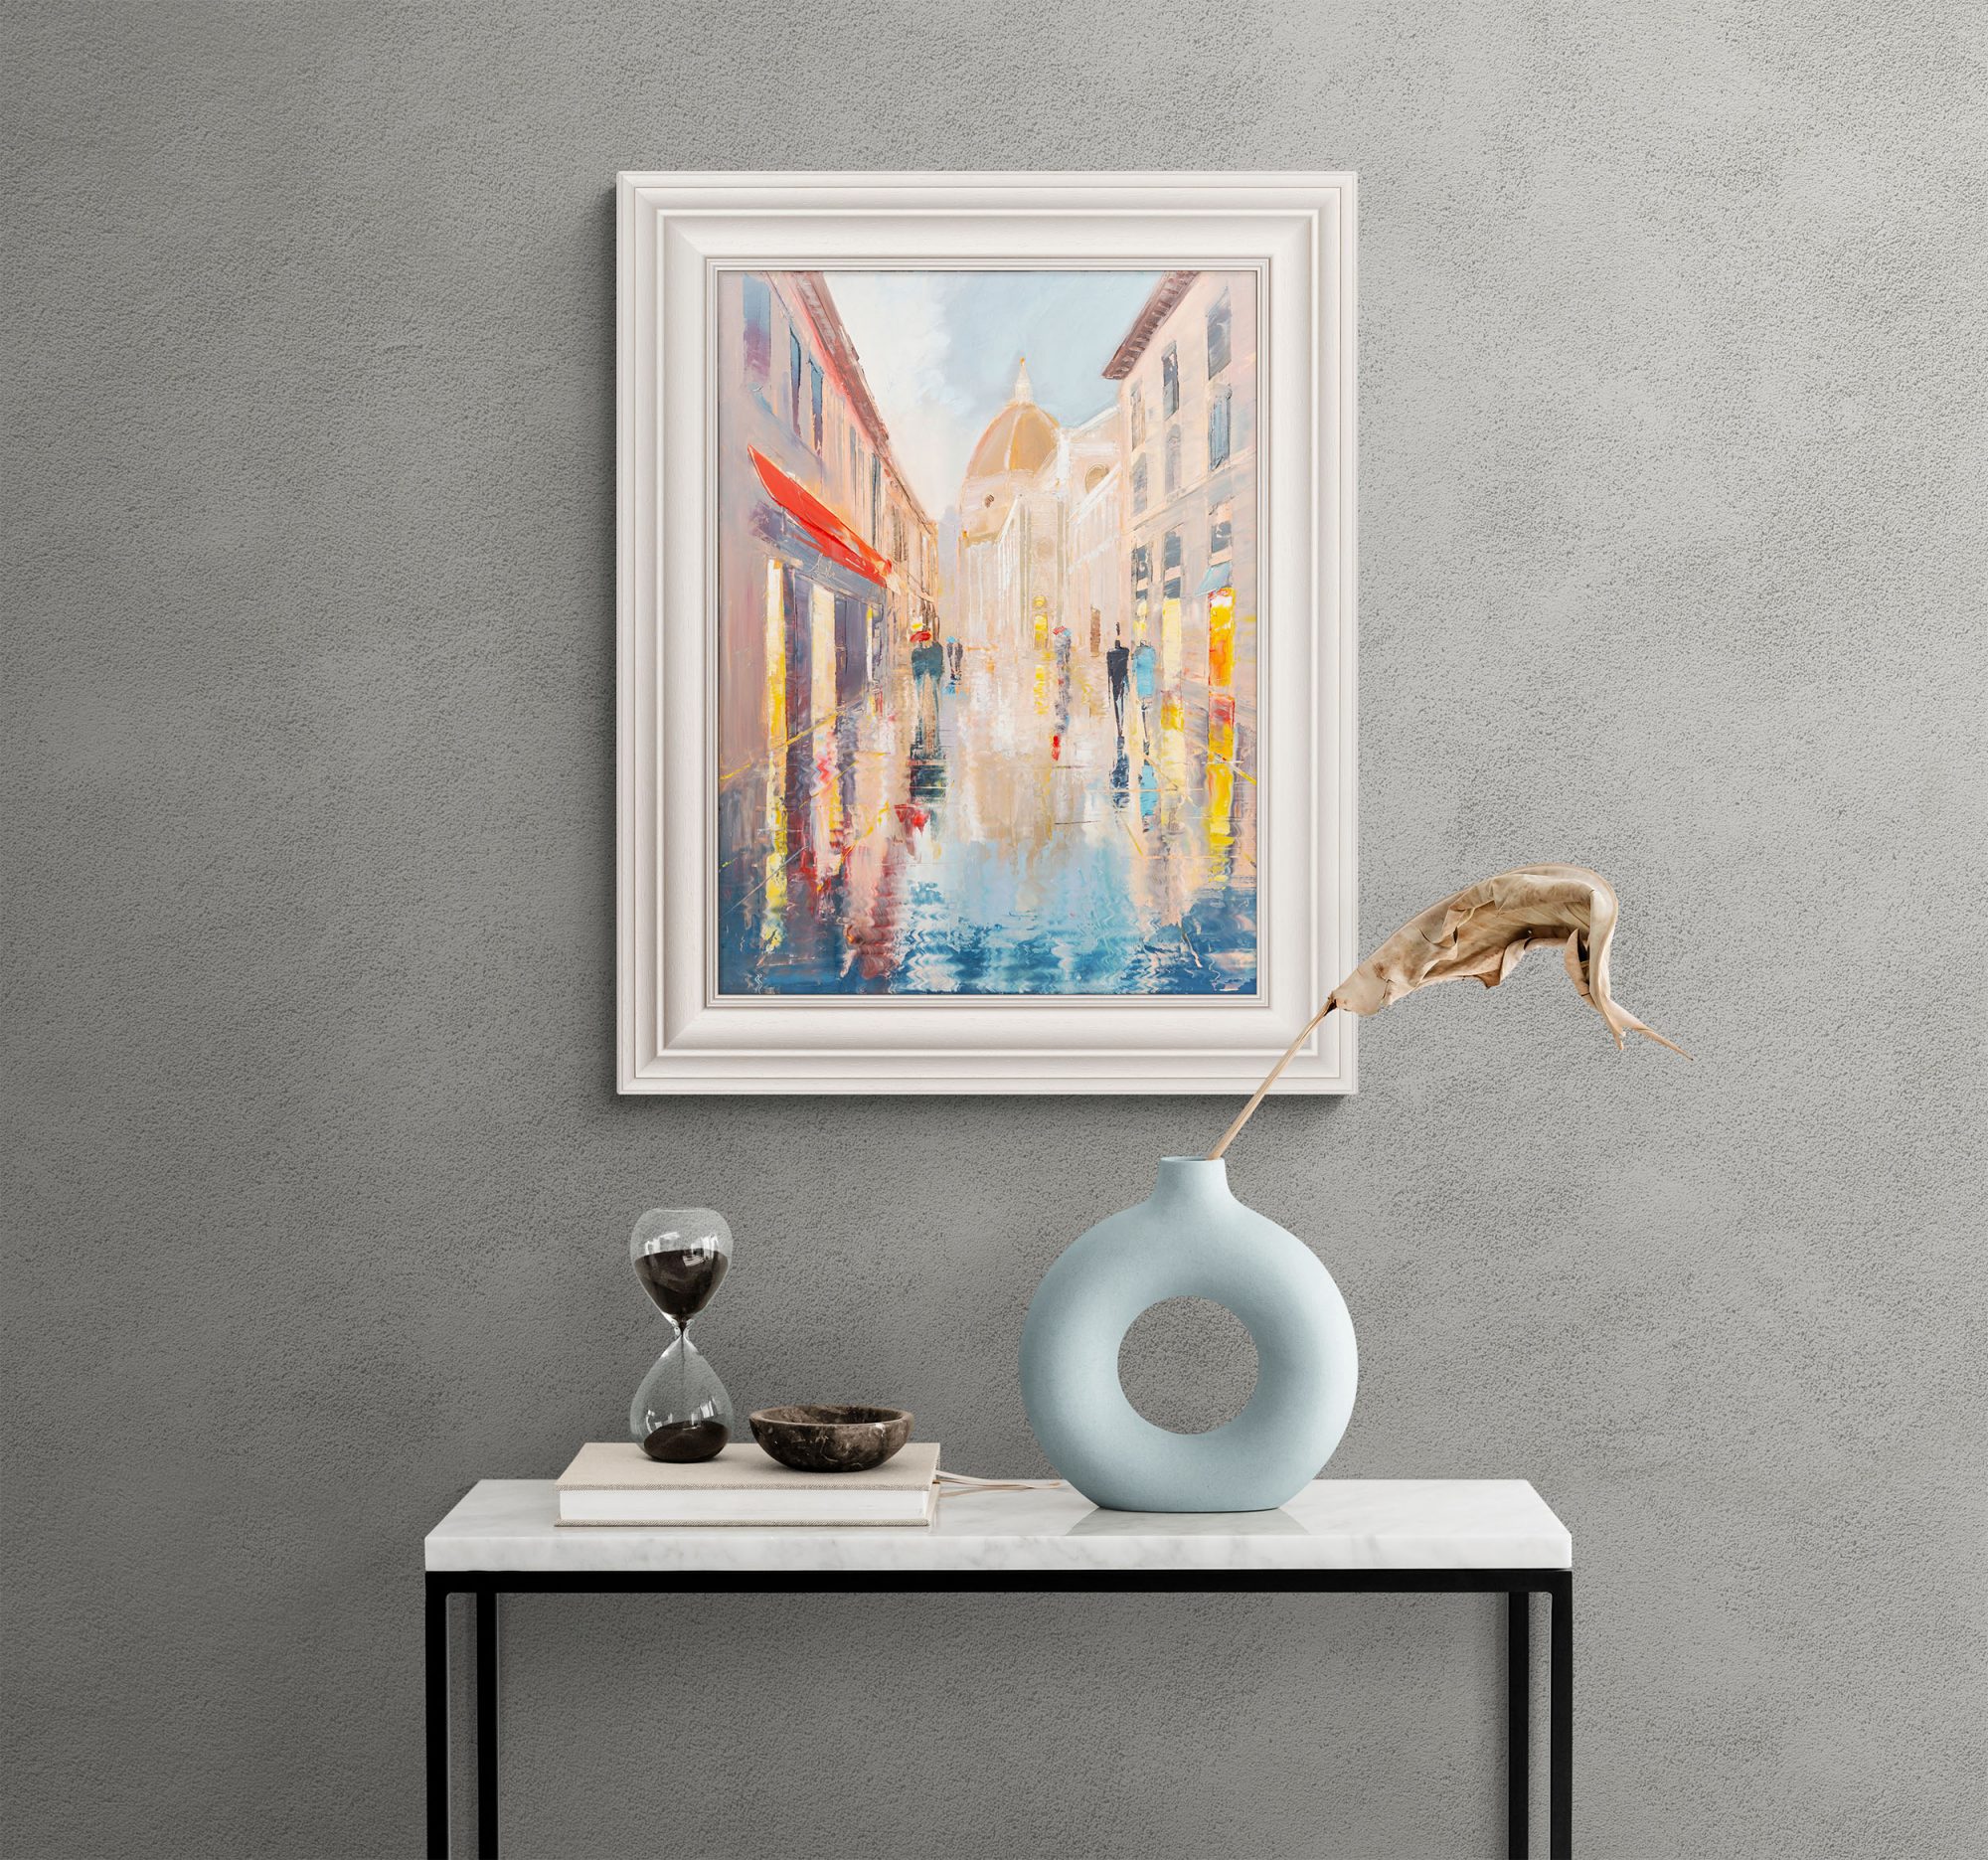 reflecting-on-florence-light-original-tuscany-cityscape-painting-paul-kenton